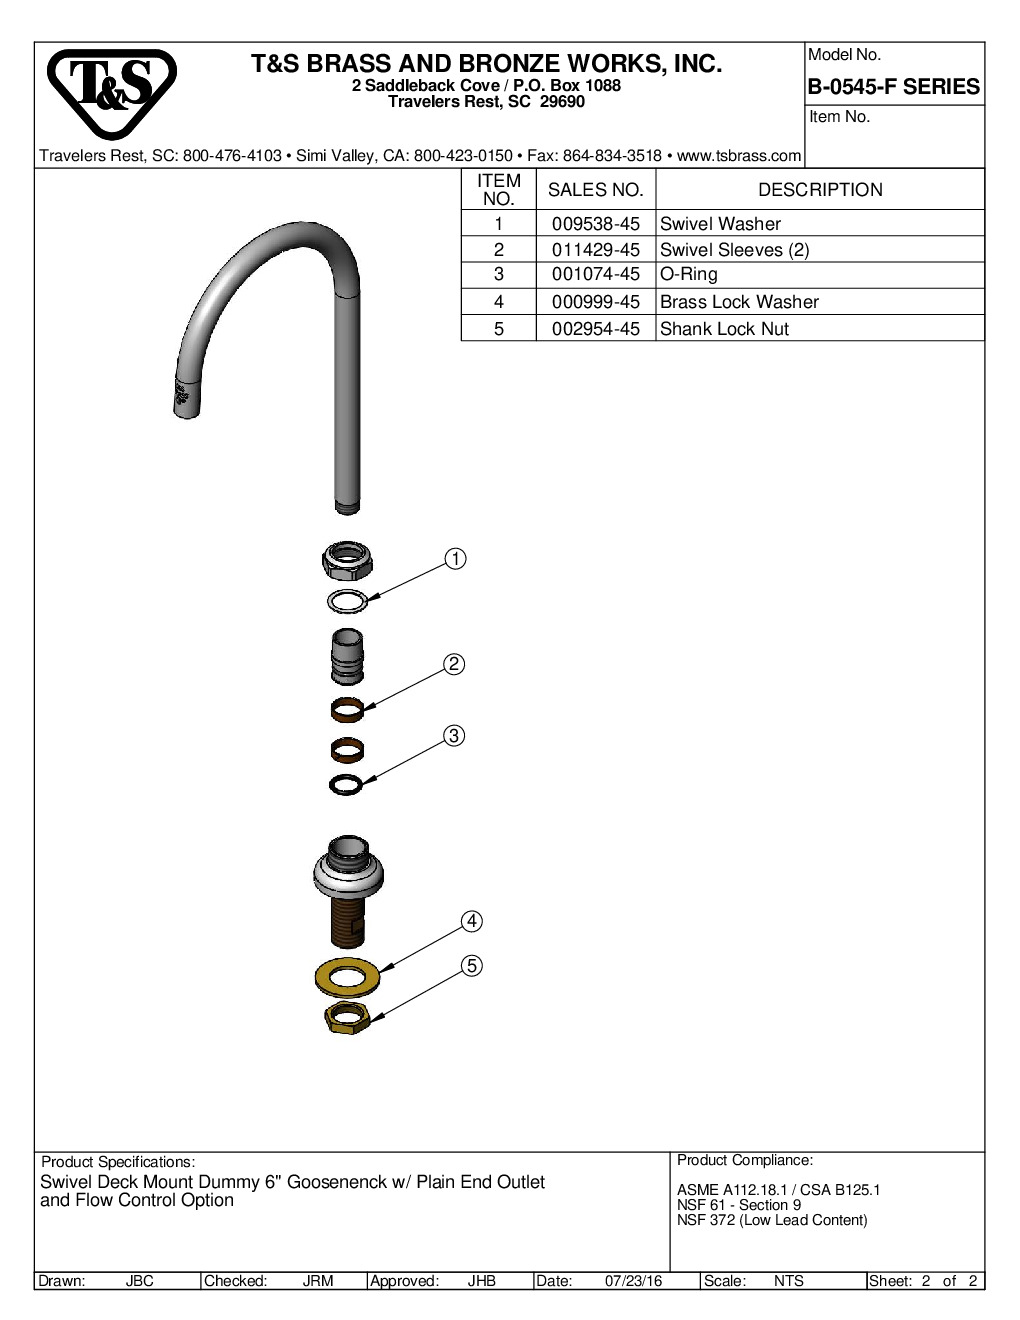 T&S Brass B-0545-F12 Spout / Nozzle Faucet